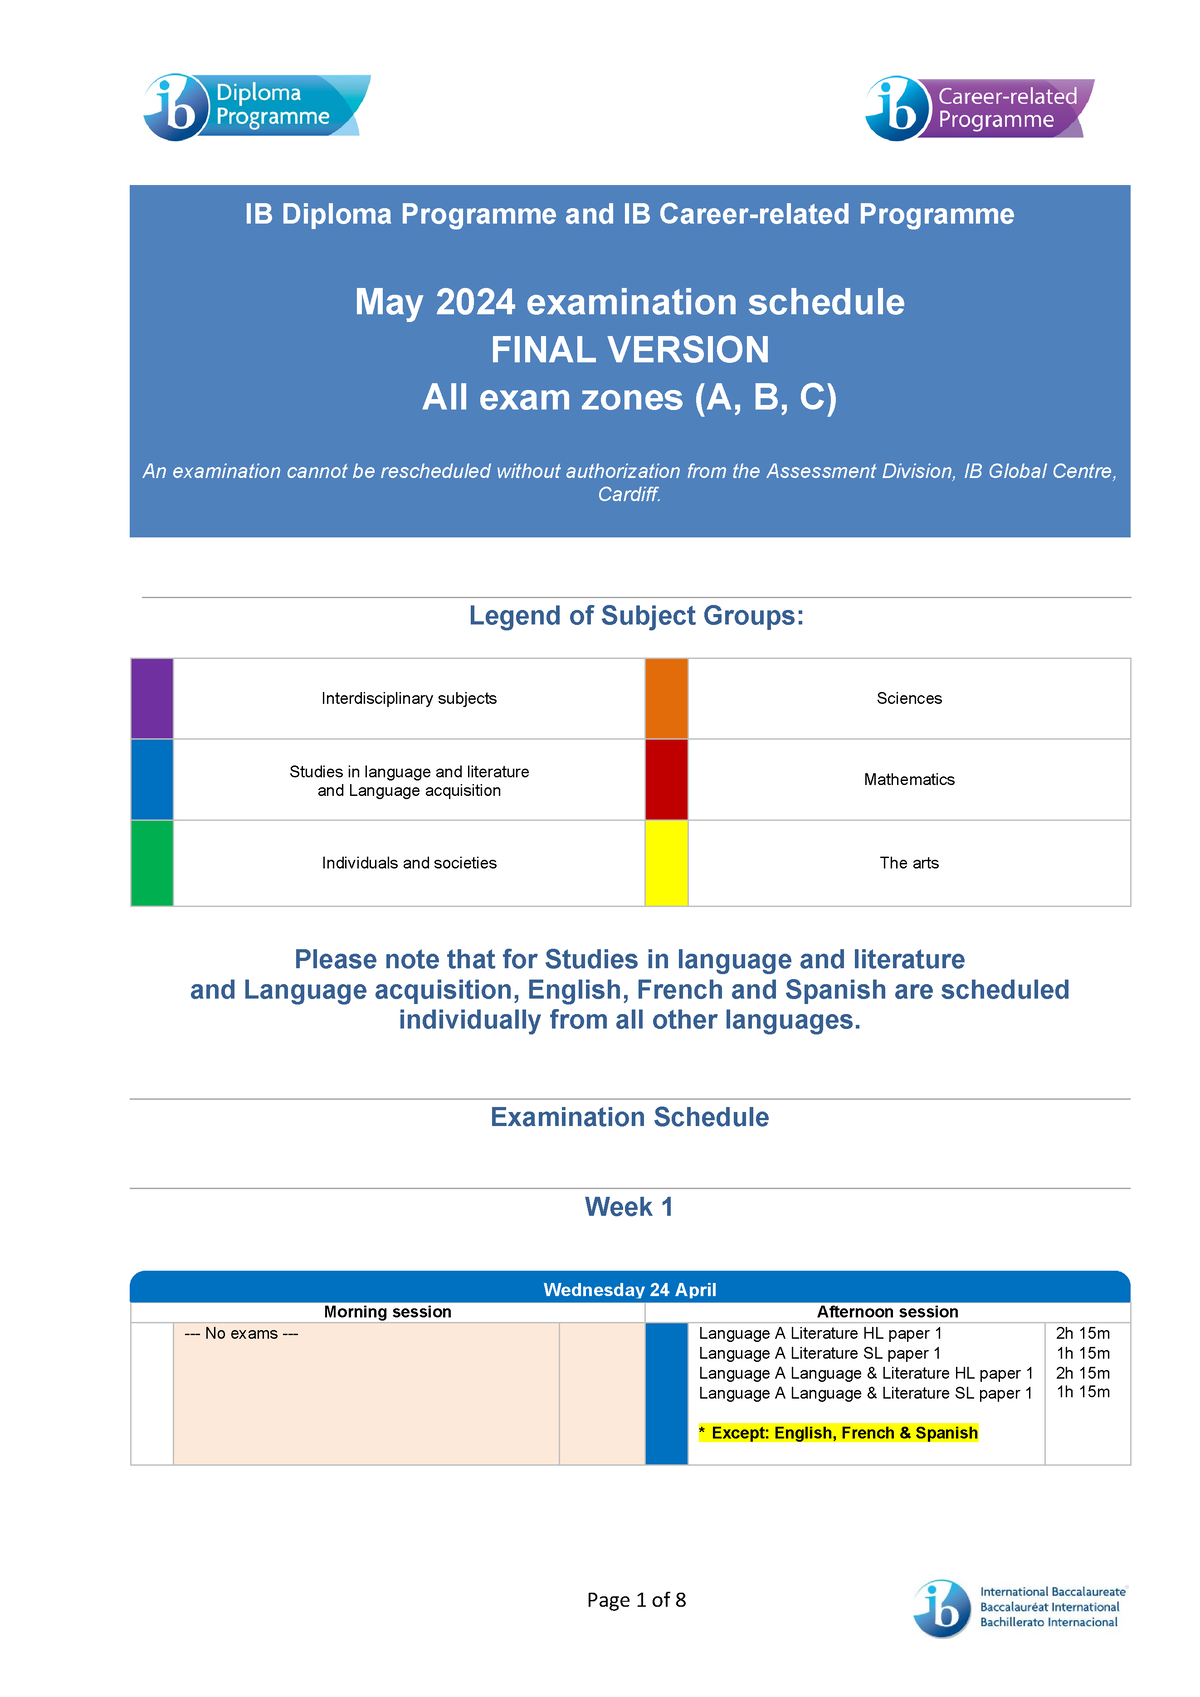 May 2024 examination schedule exam en IB Diploma Programme and IB